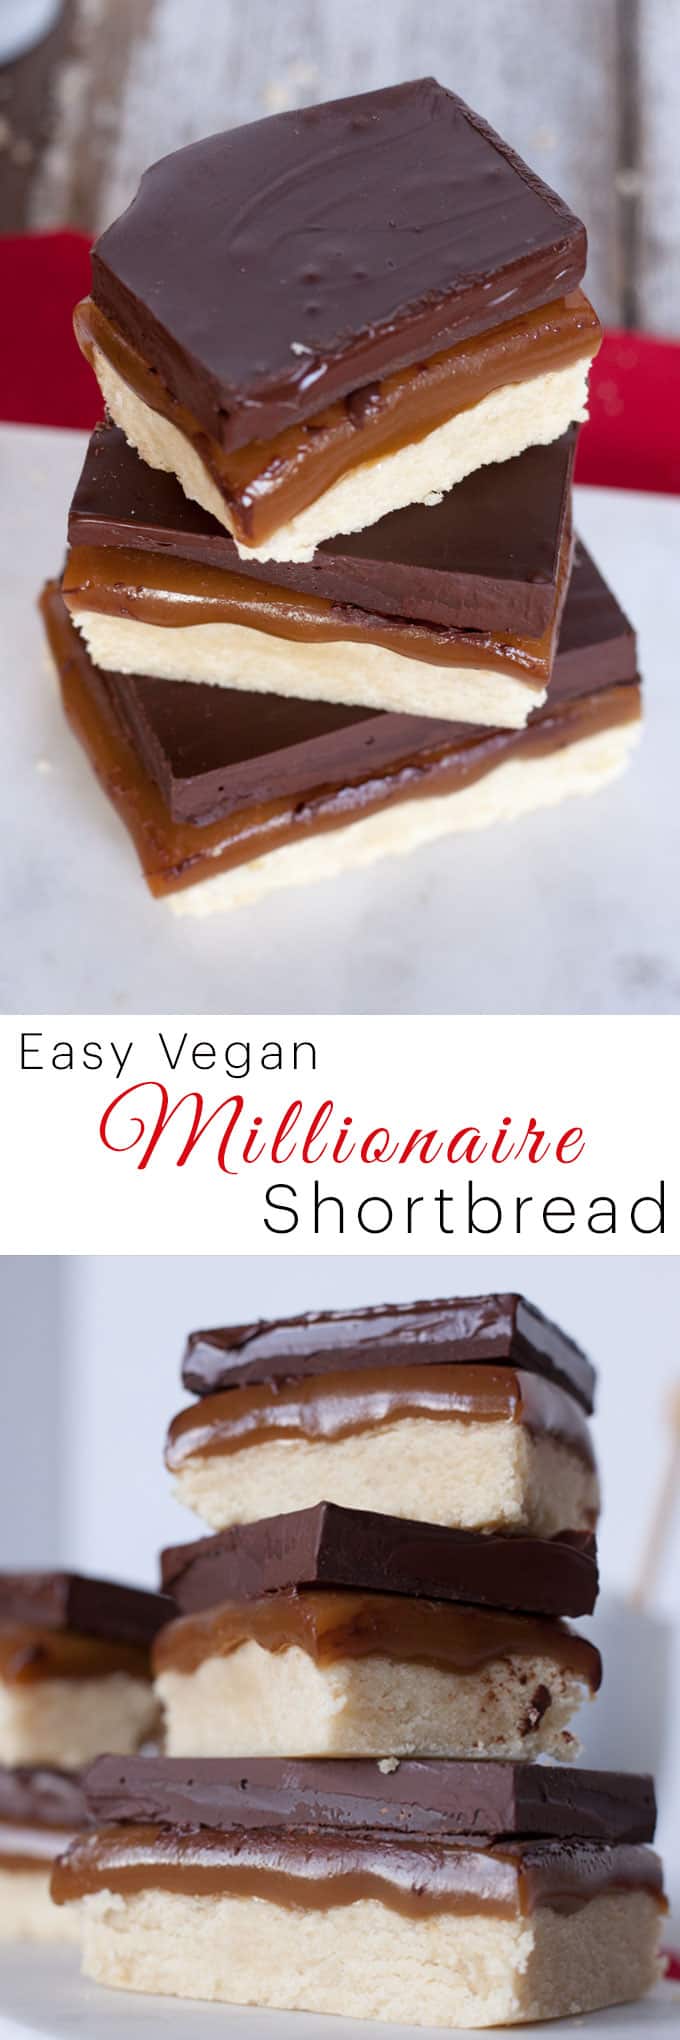 vegan Millionaire Shortbread recipe